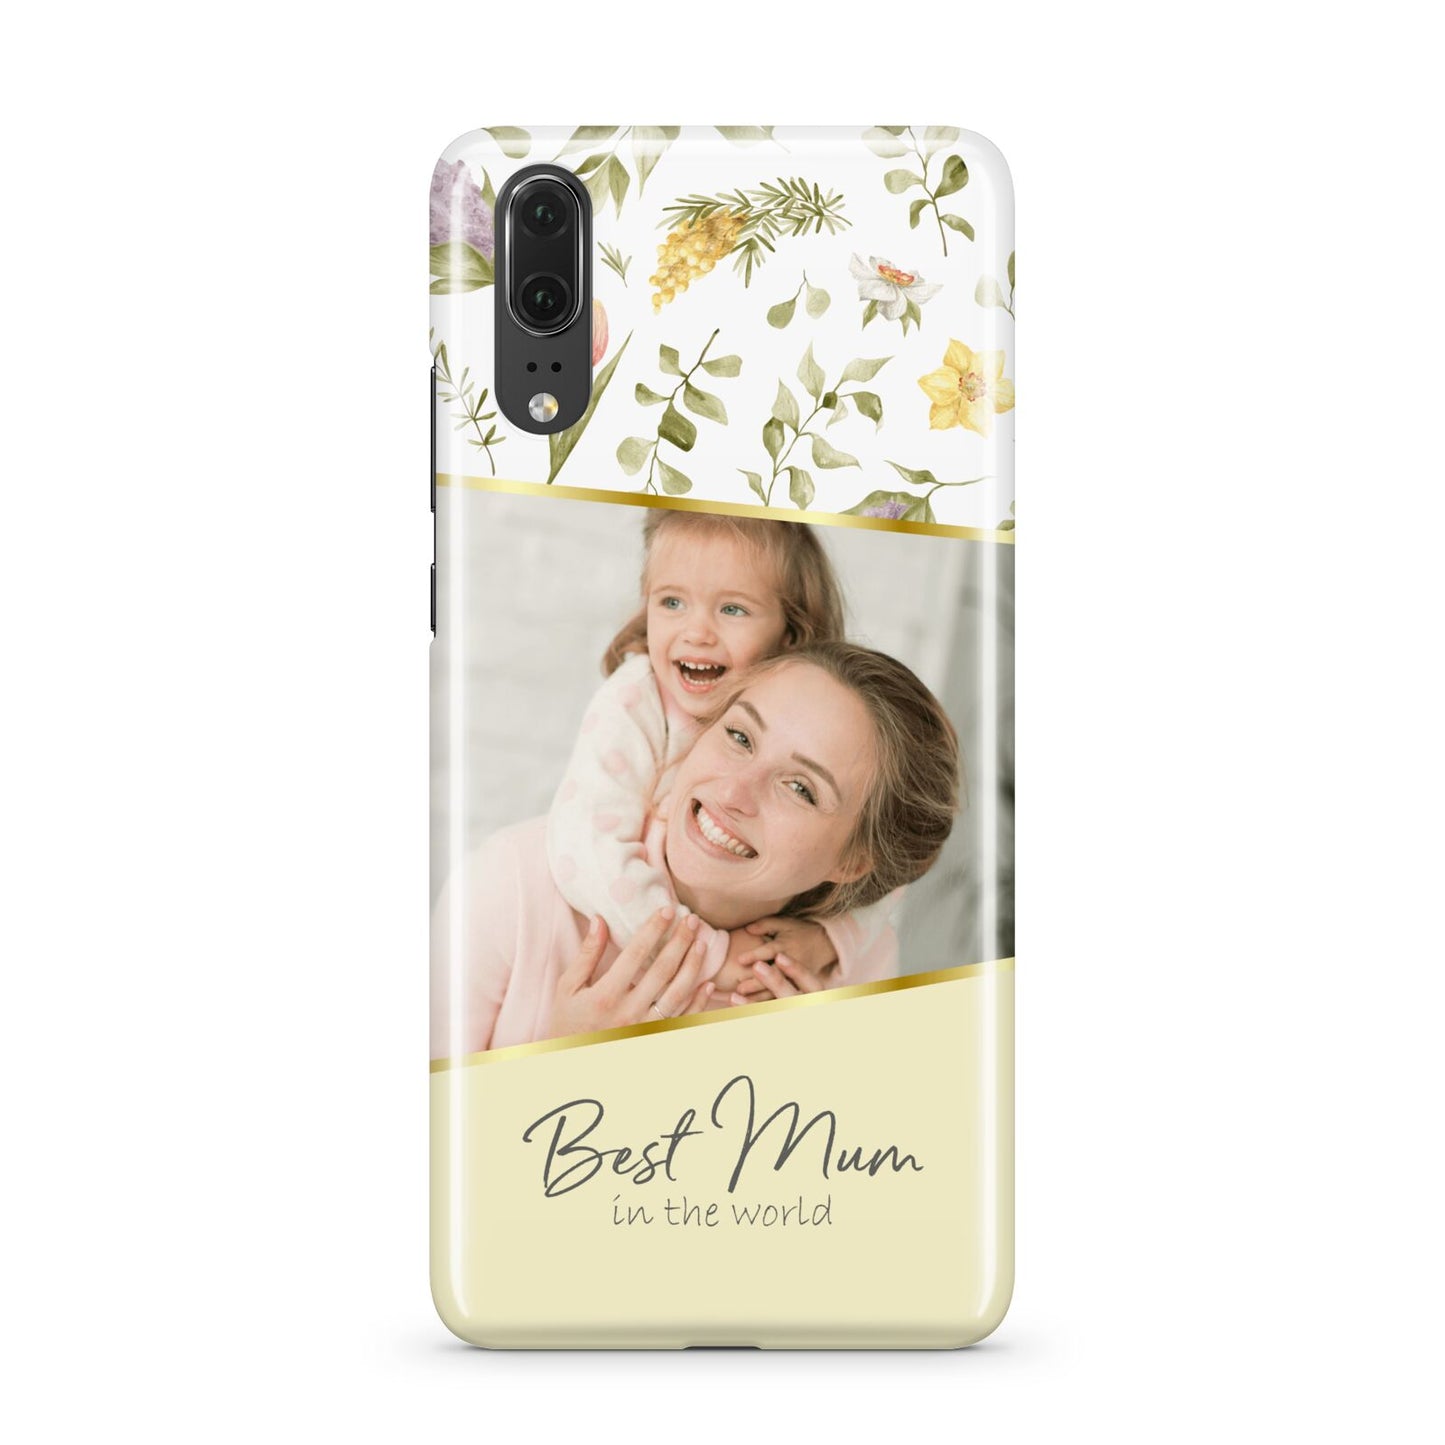 Personalised Best Mum Huawei P20 Phone Case